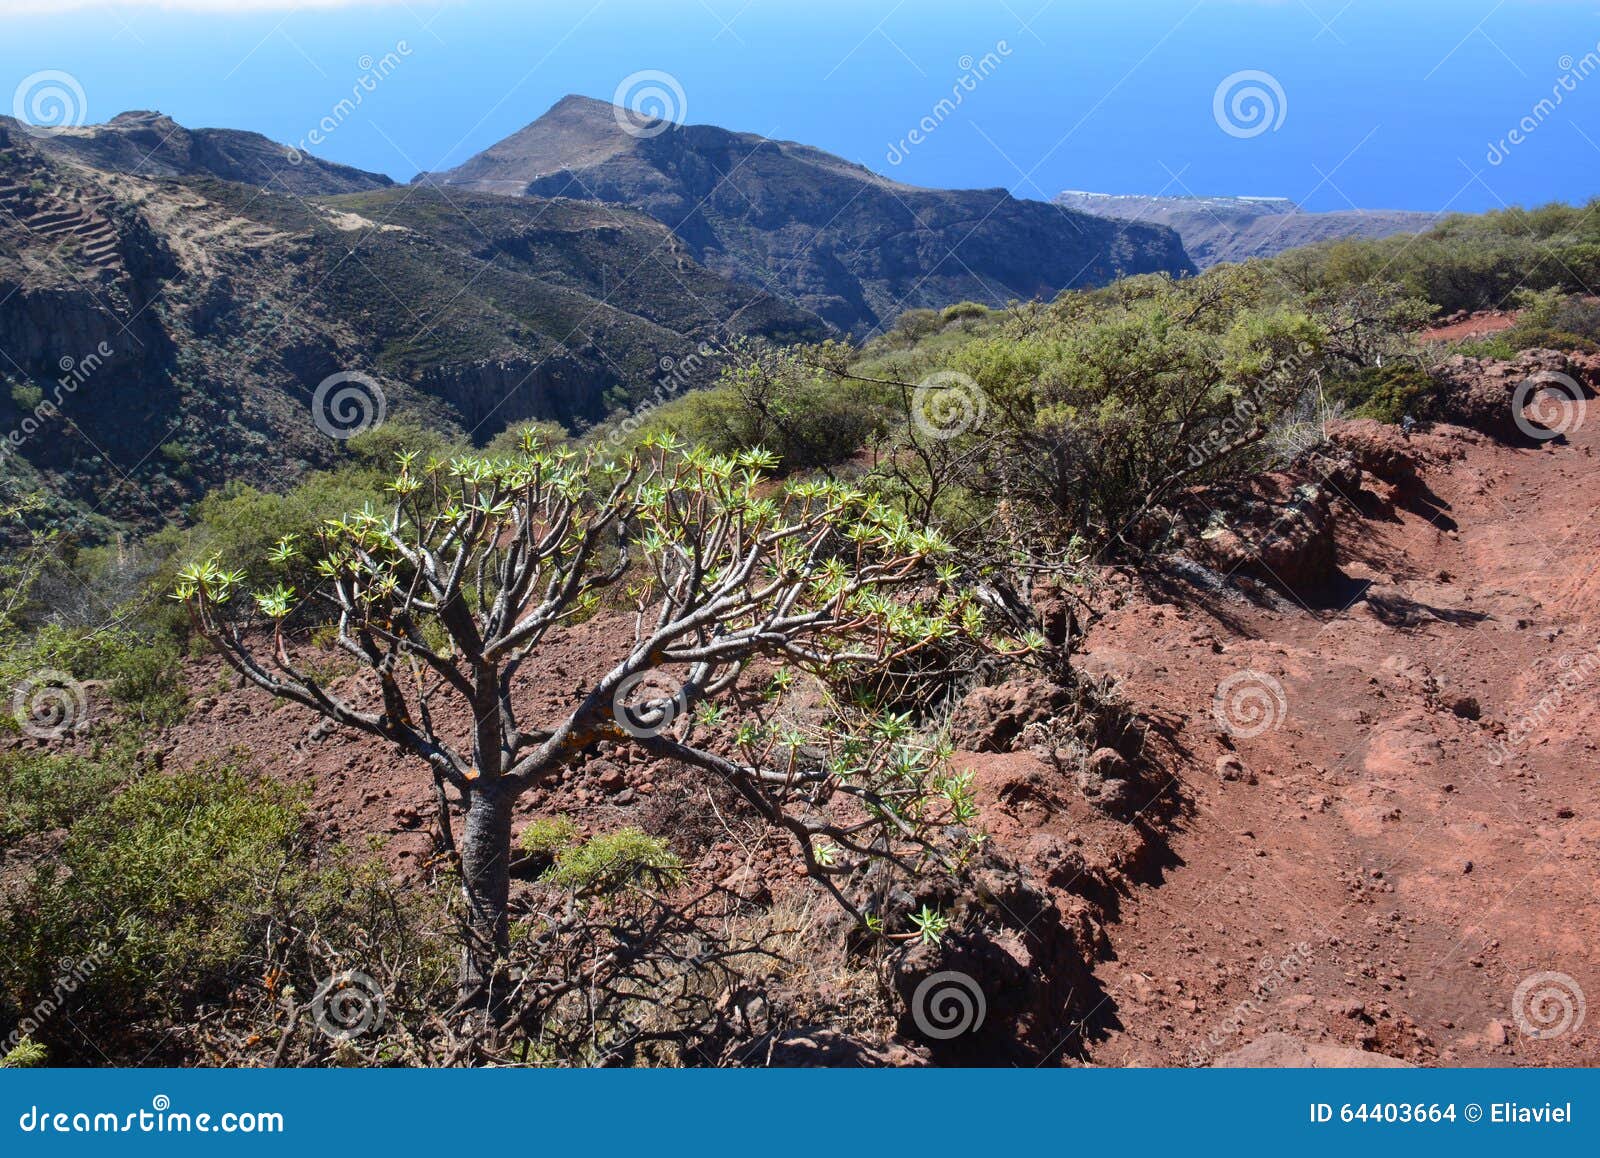 a landscape of la gomera island , the canaries